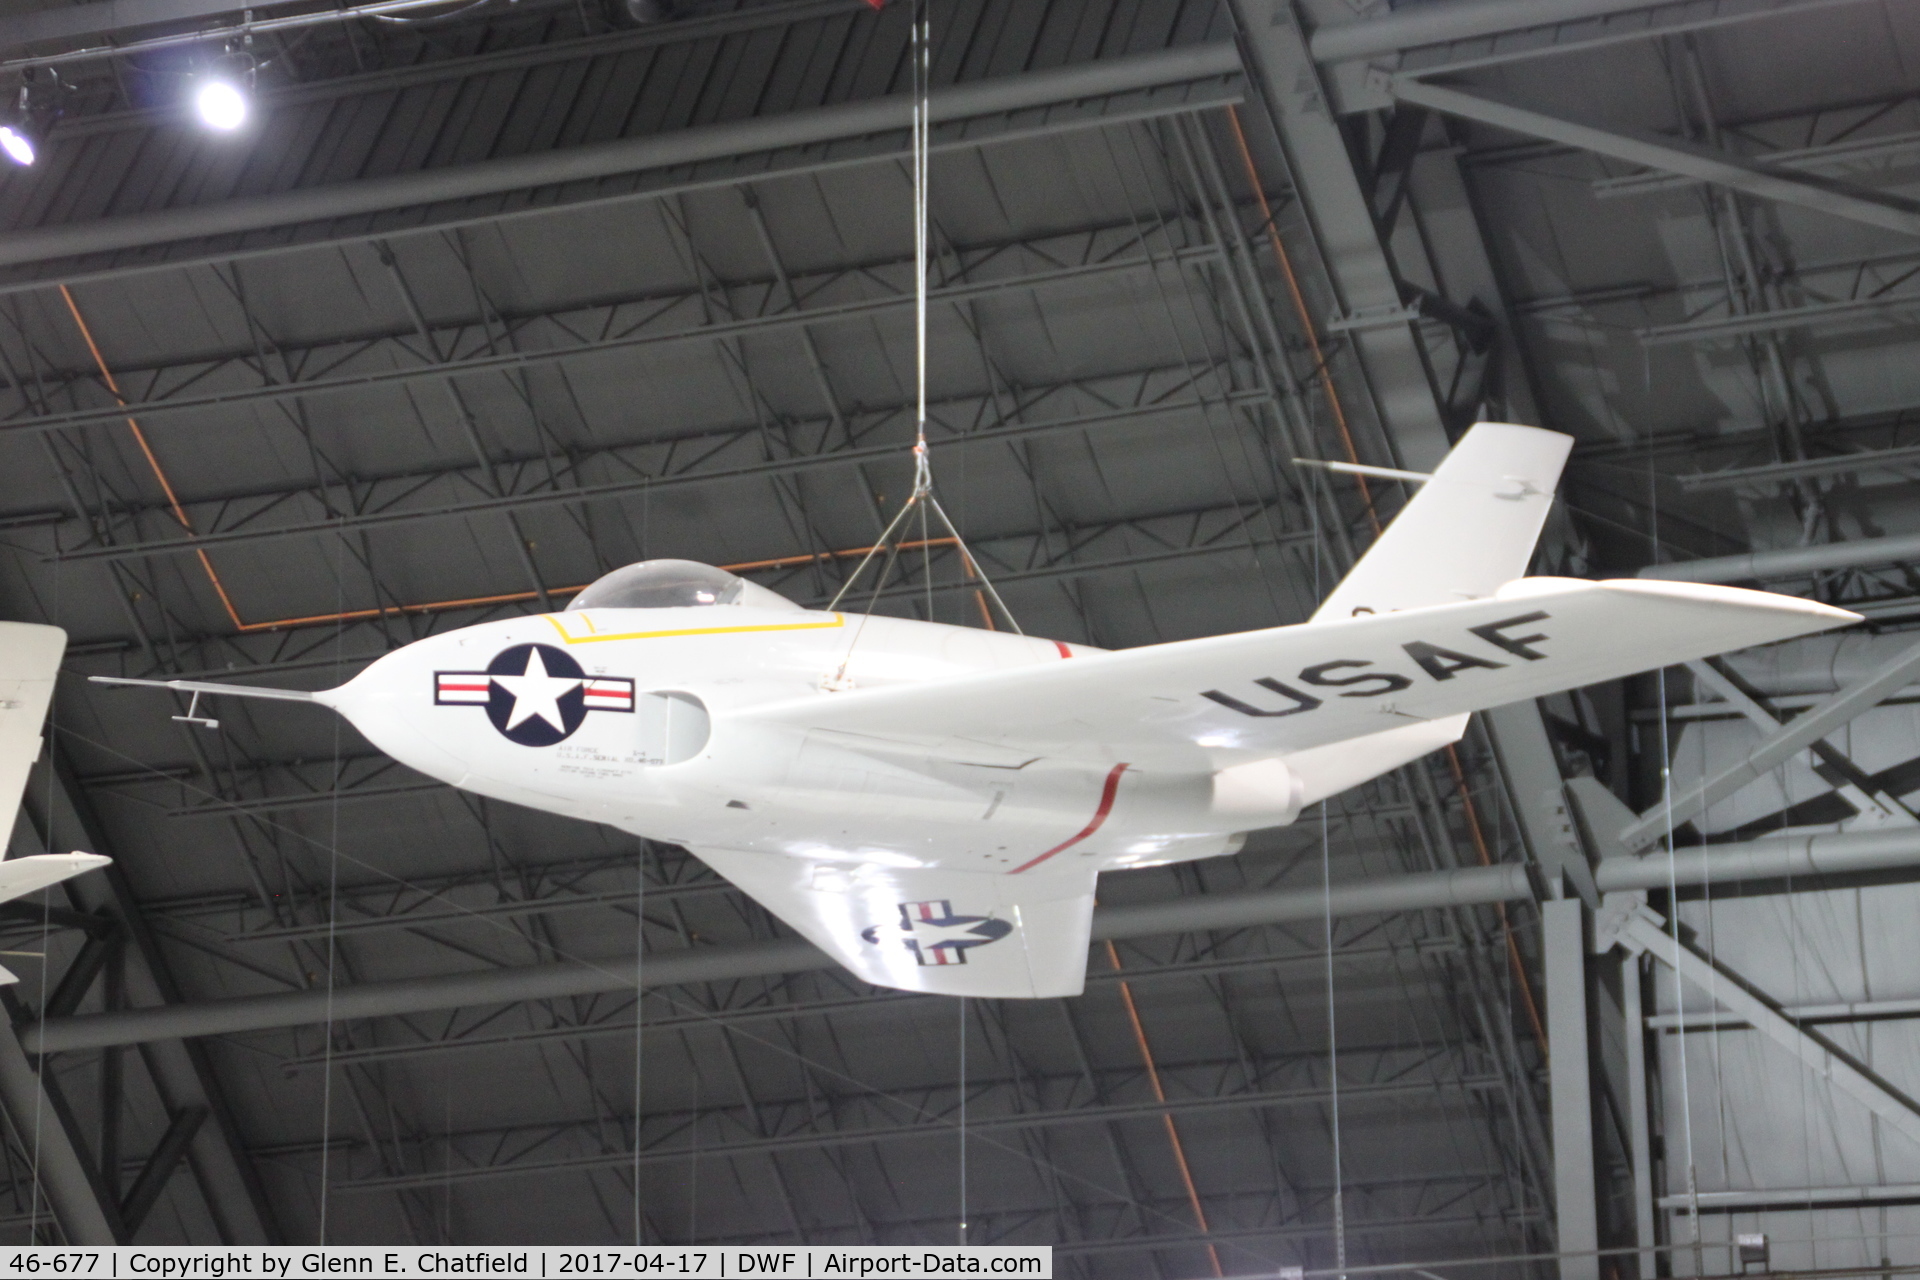 46-677, 1946 Northrop X-4 Bantam C/N Not found (46-677), NMUSAF